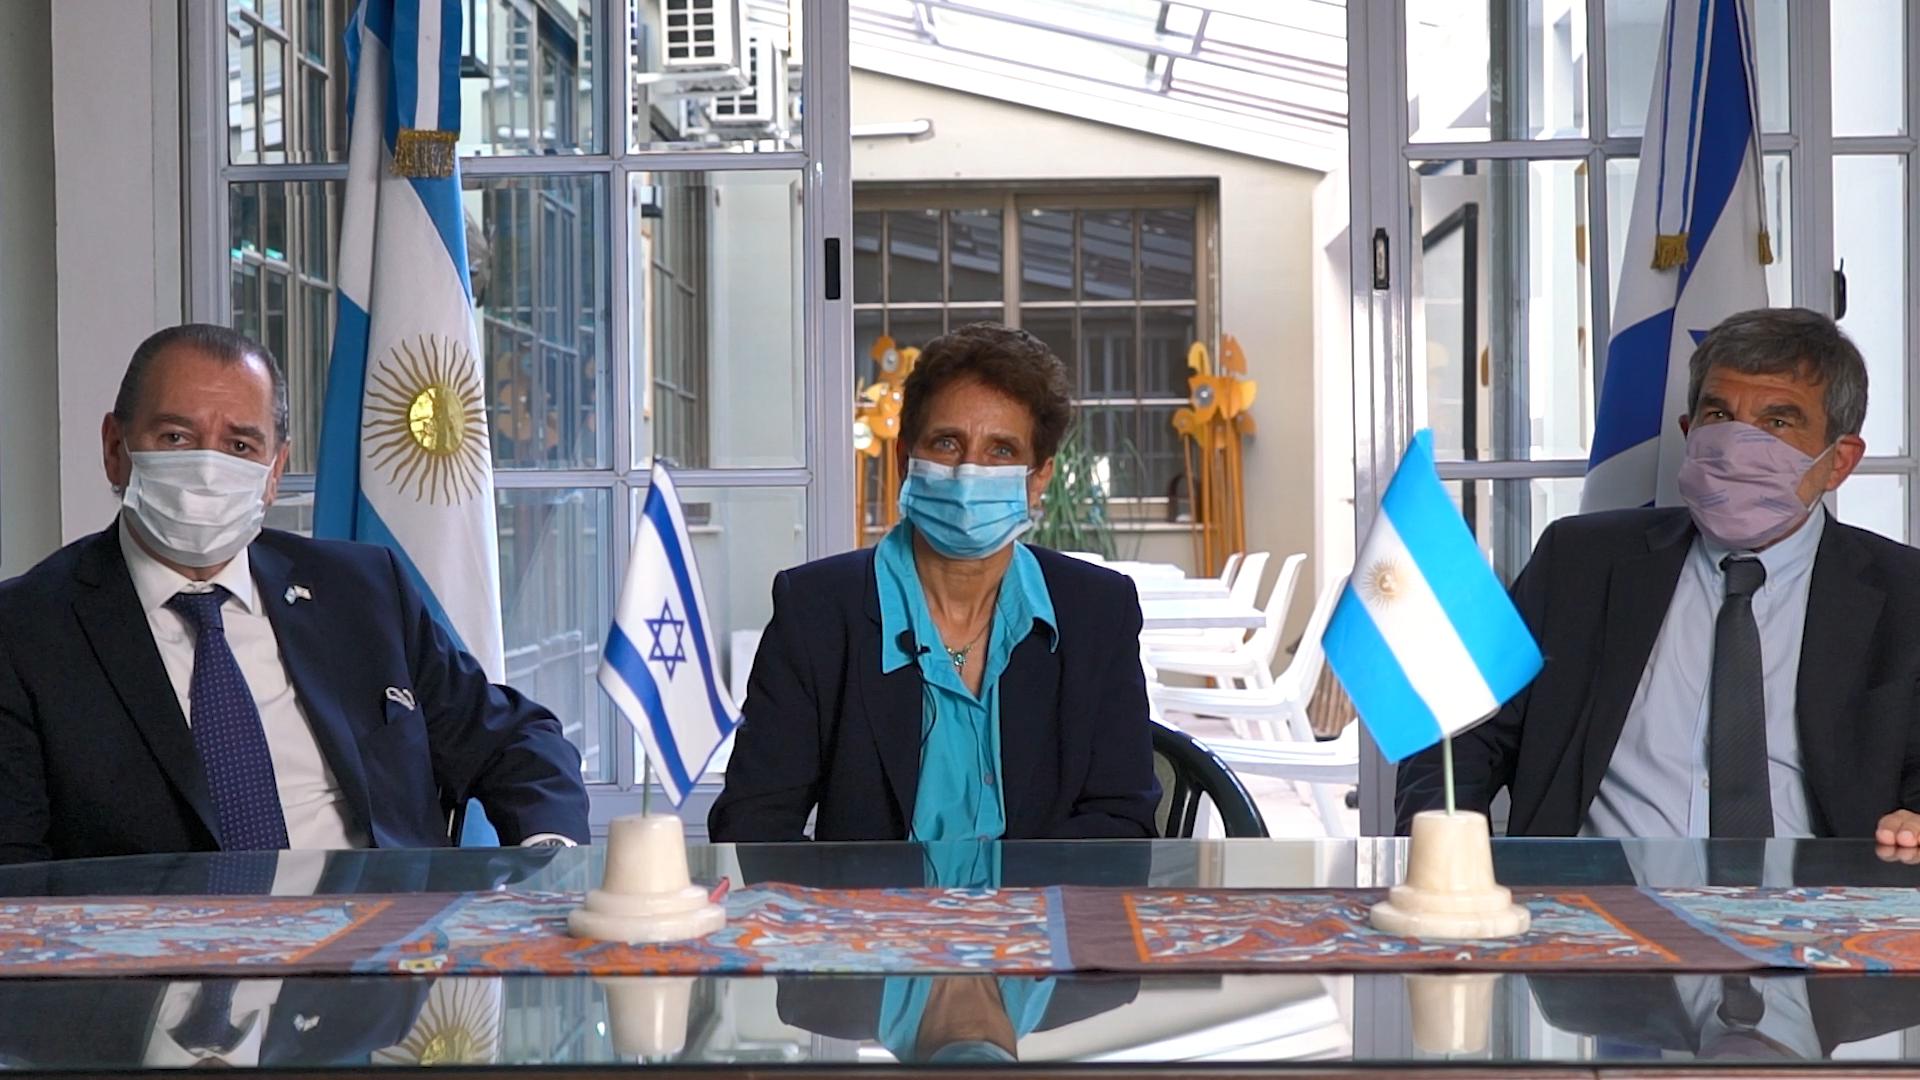 De izquierda a derecha: Roberto Salvarezza, ministro de Ciencia, Tecnología e Innovación de la Nación; Galit Ronen, Embajadora del Estado de Israel en Argentina y Mario Montoto, Presidente de la Cámara de Comercio Argentino Israelí.